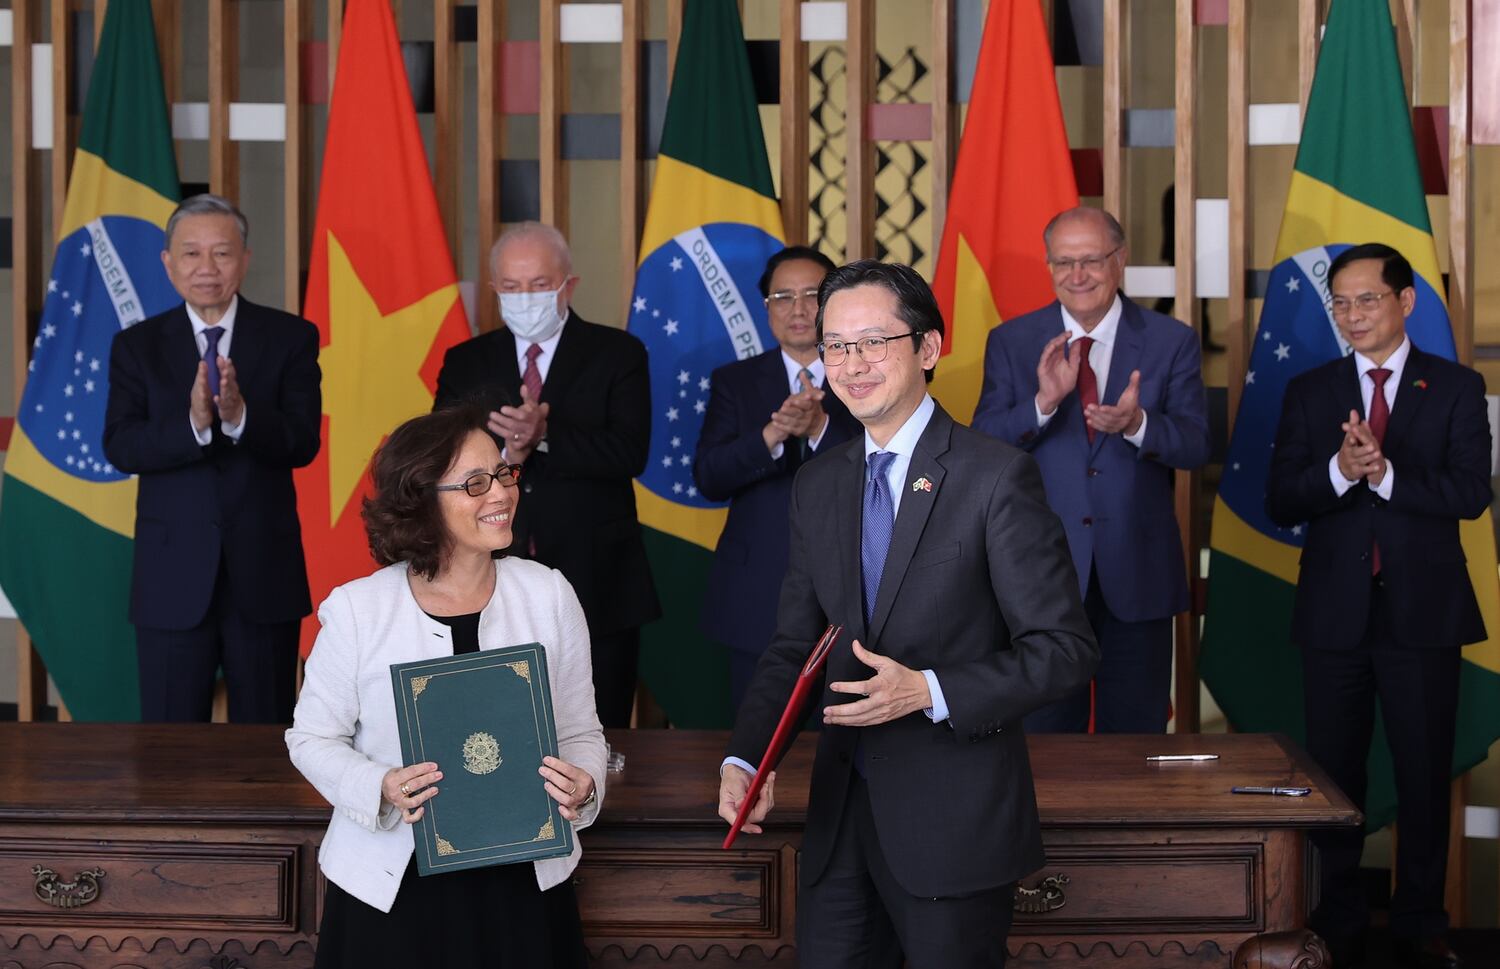 Thủ tướng Chính phủ Phạm Minh Chính và Tổng thống Brazil chứng kiến lễ ký văn bản hợp tác giữa hai nước trong các lĩnh vực giáo dục, quốc phòng, nông nghiệp, ngoại giao. Ảnh: VGP